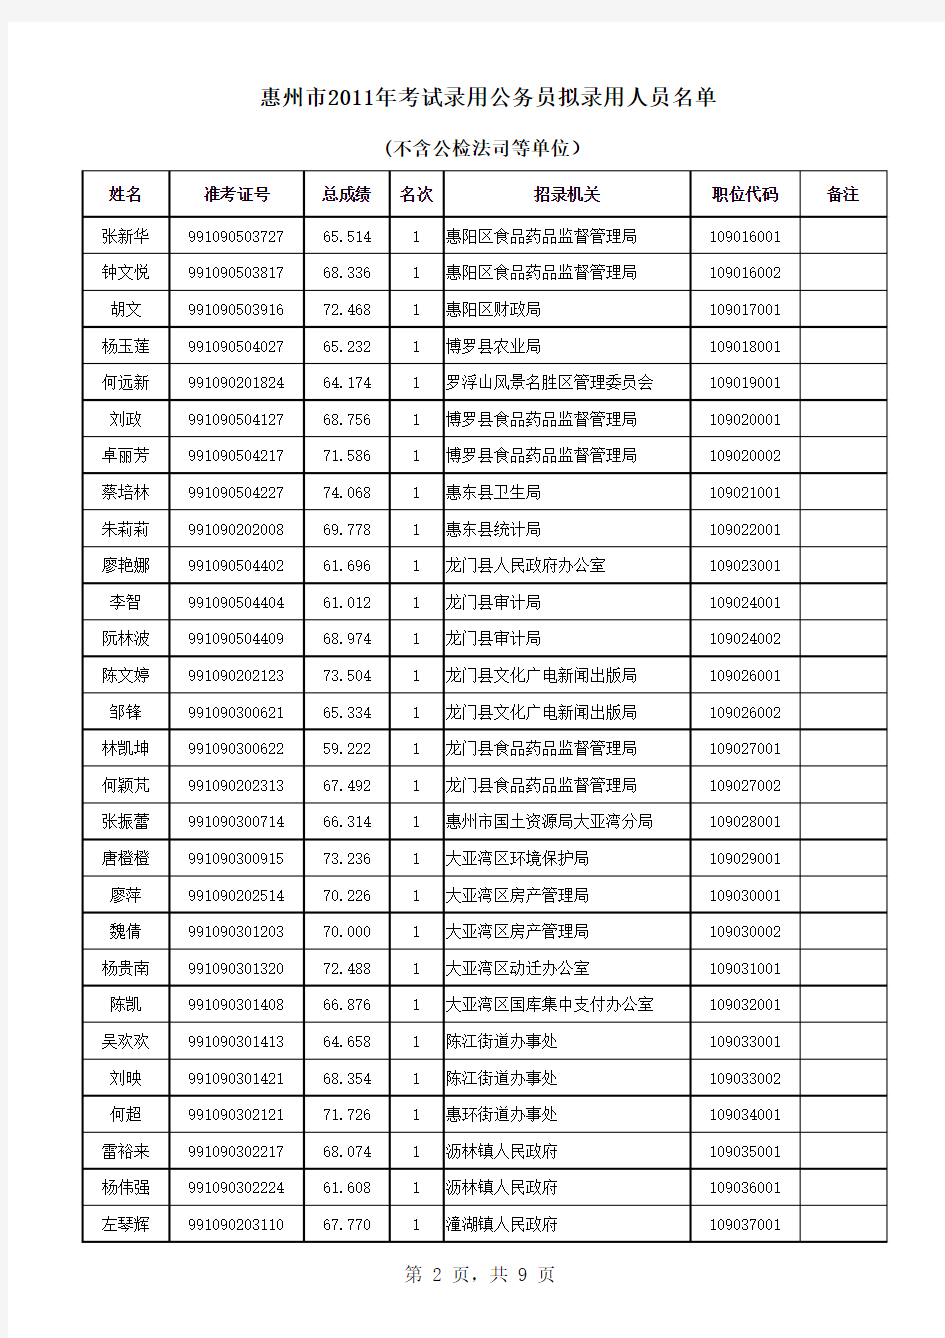 2011年惠州市公务员考试录用最终名单